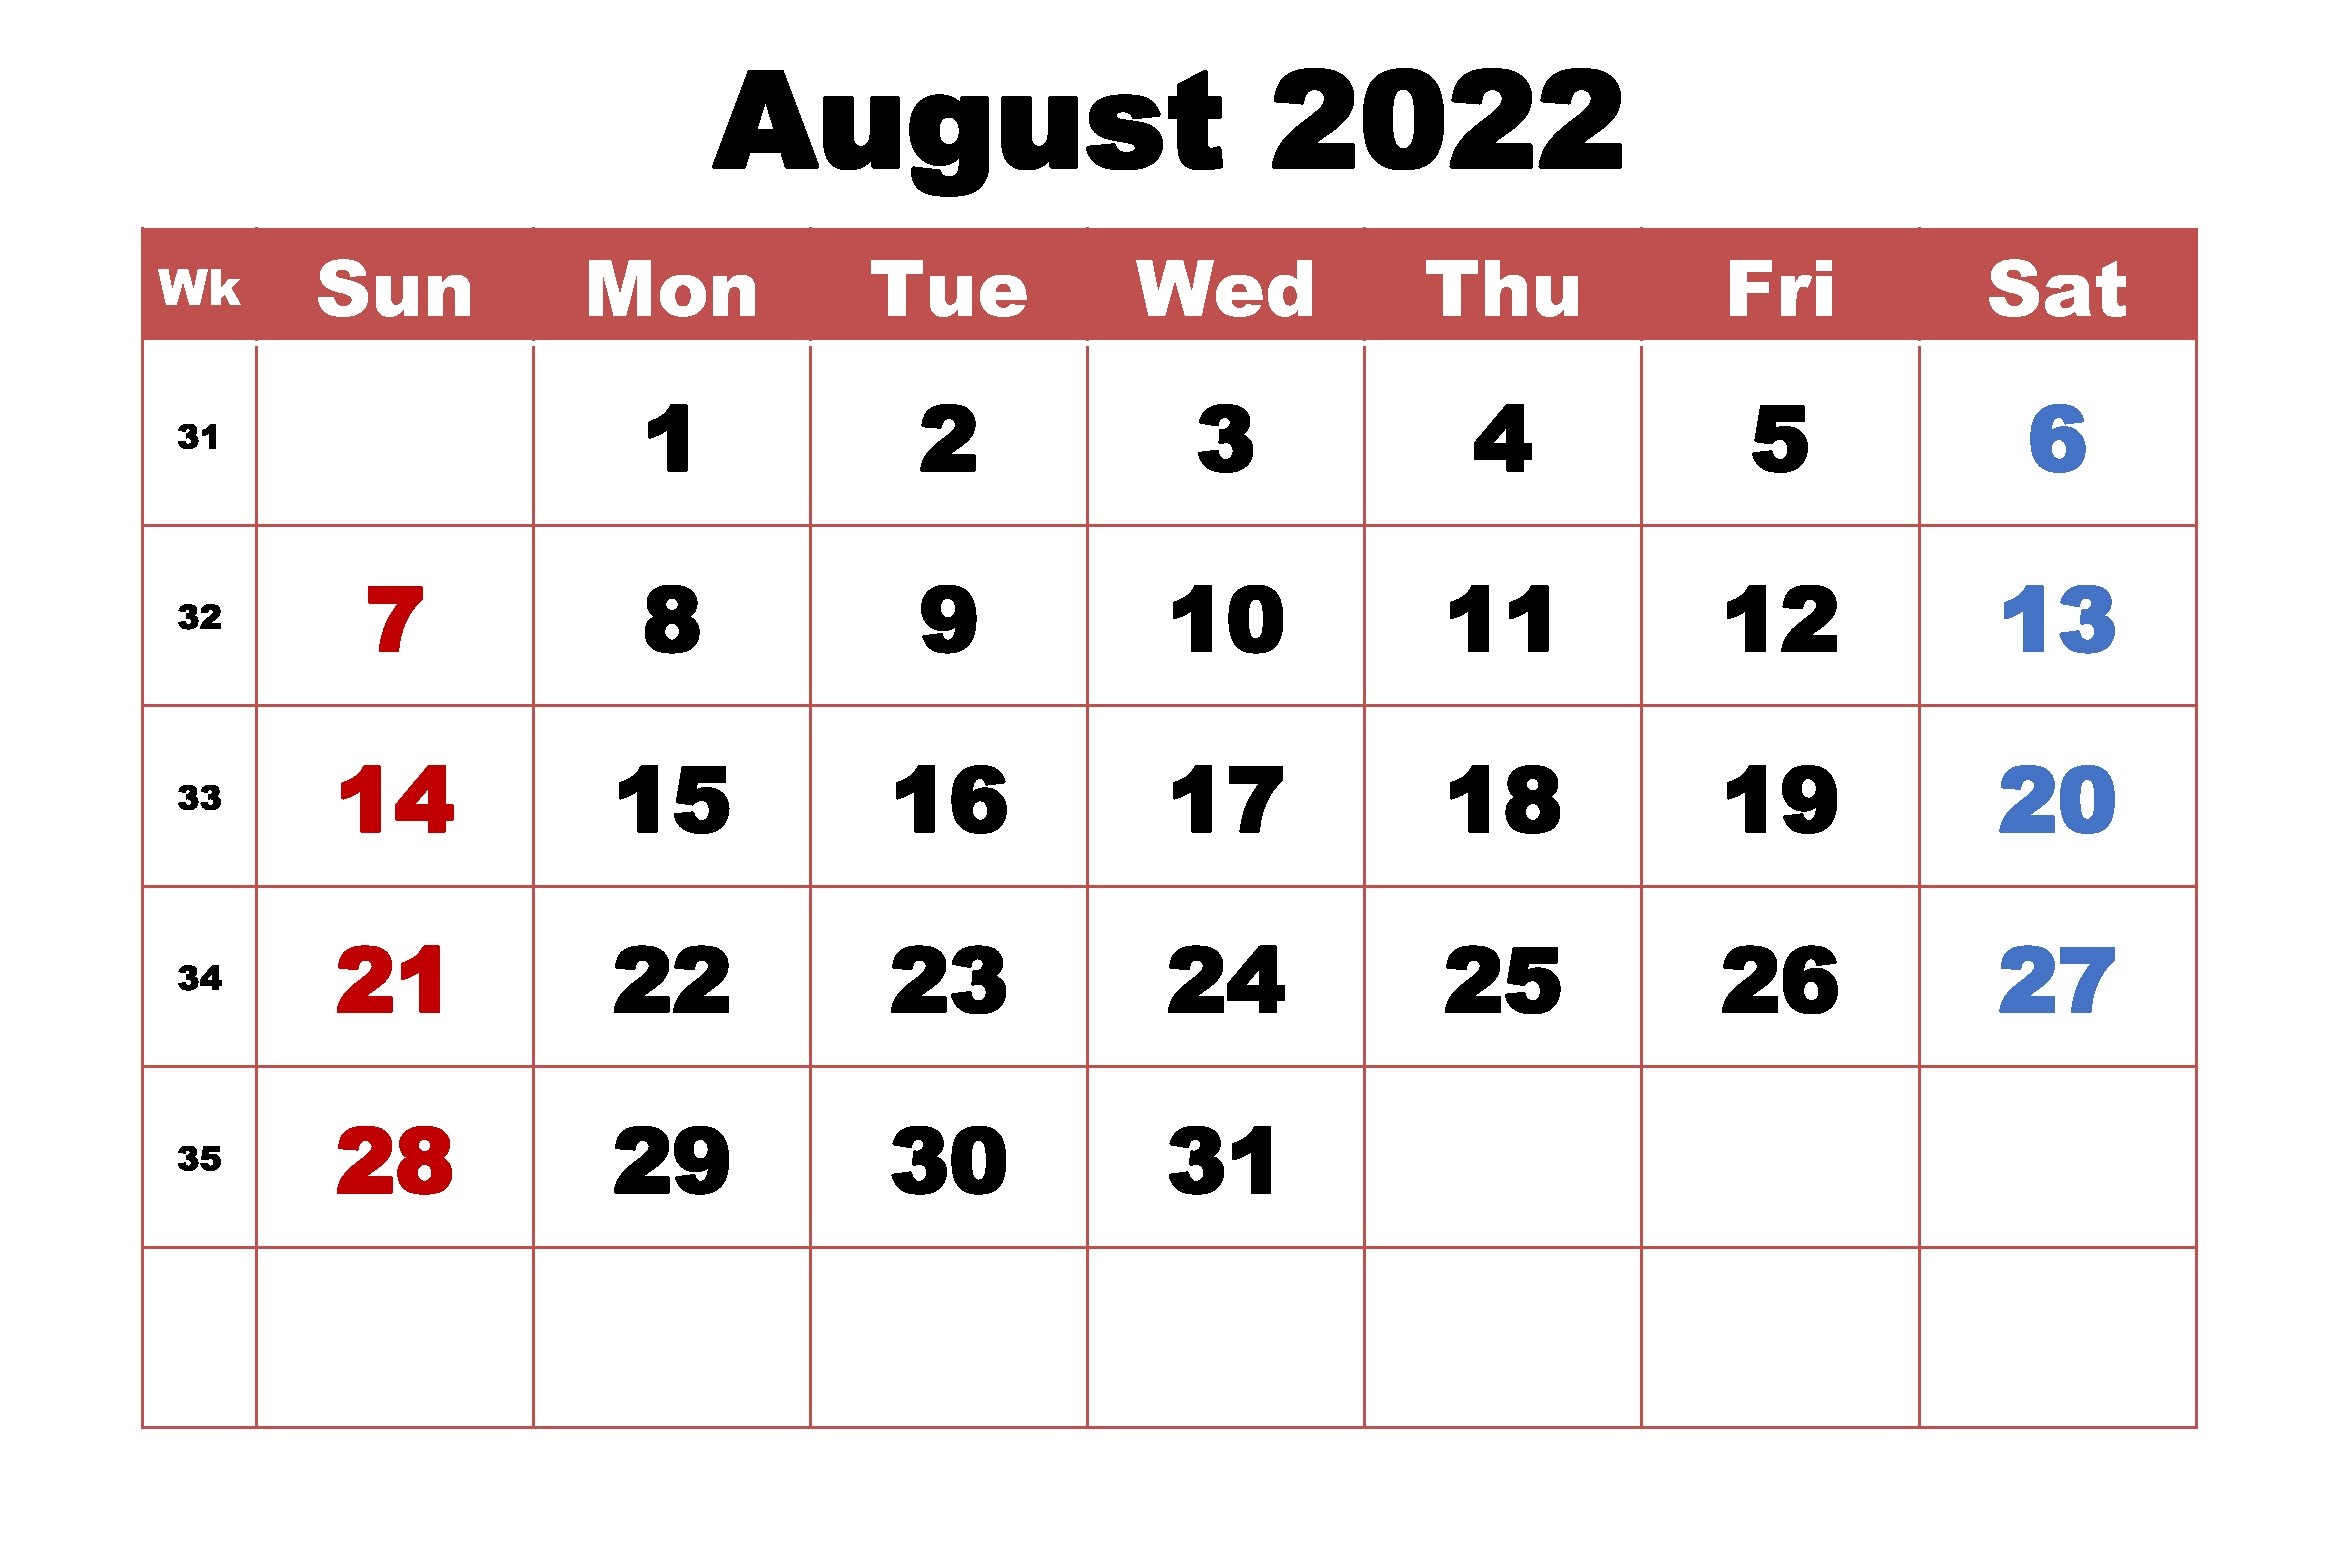 August Calendar 2022 Template